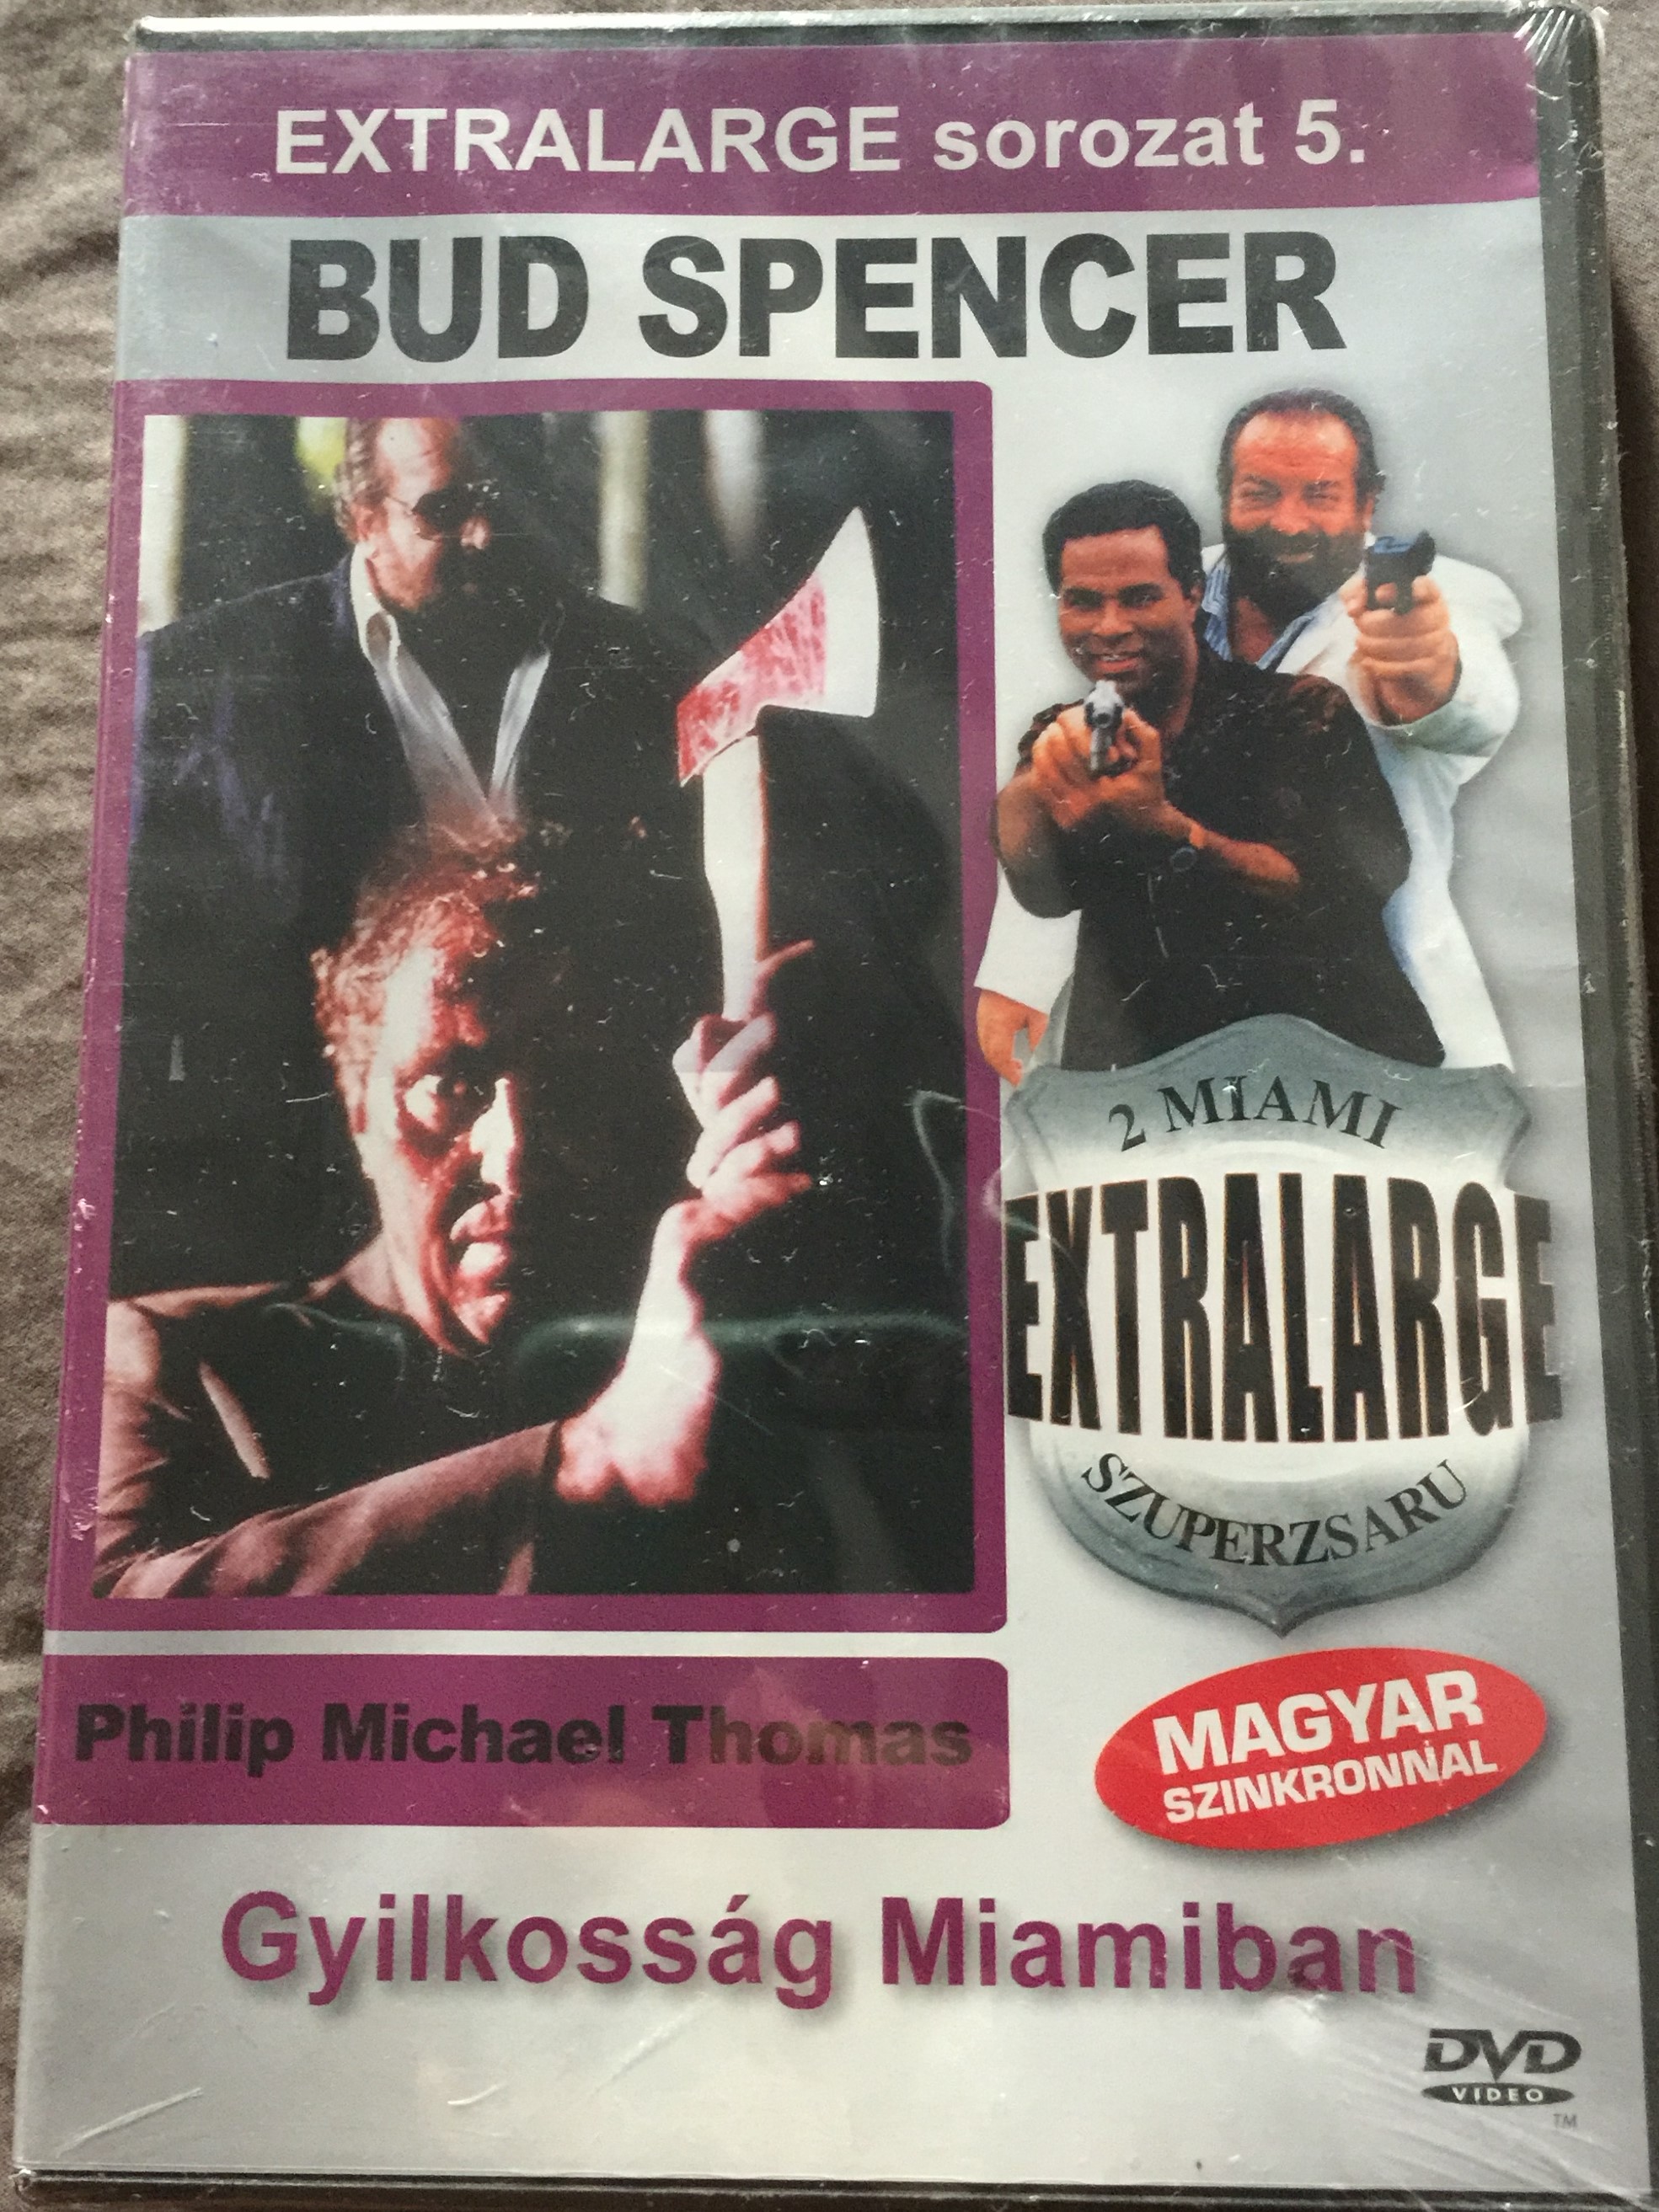 extralarge-miami-killer-dvd-1991-extralarge-gyilkoss-g-miamiban-2-miami-szuperzsaru-1.jpg